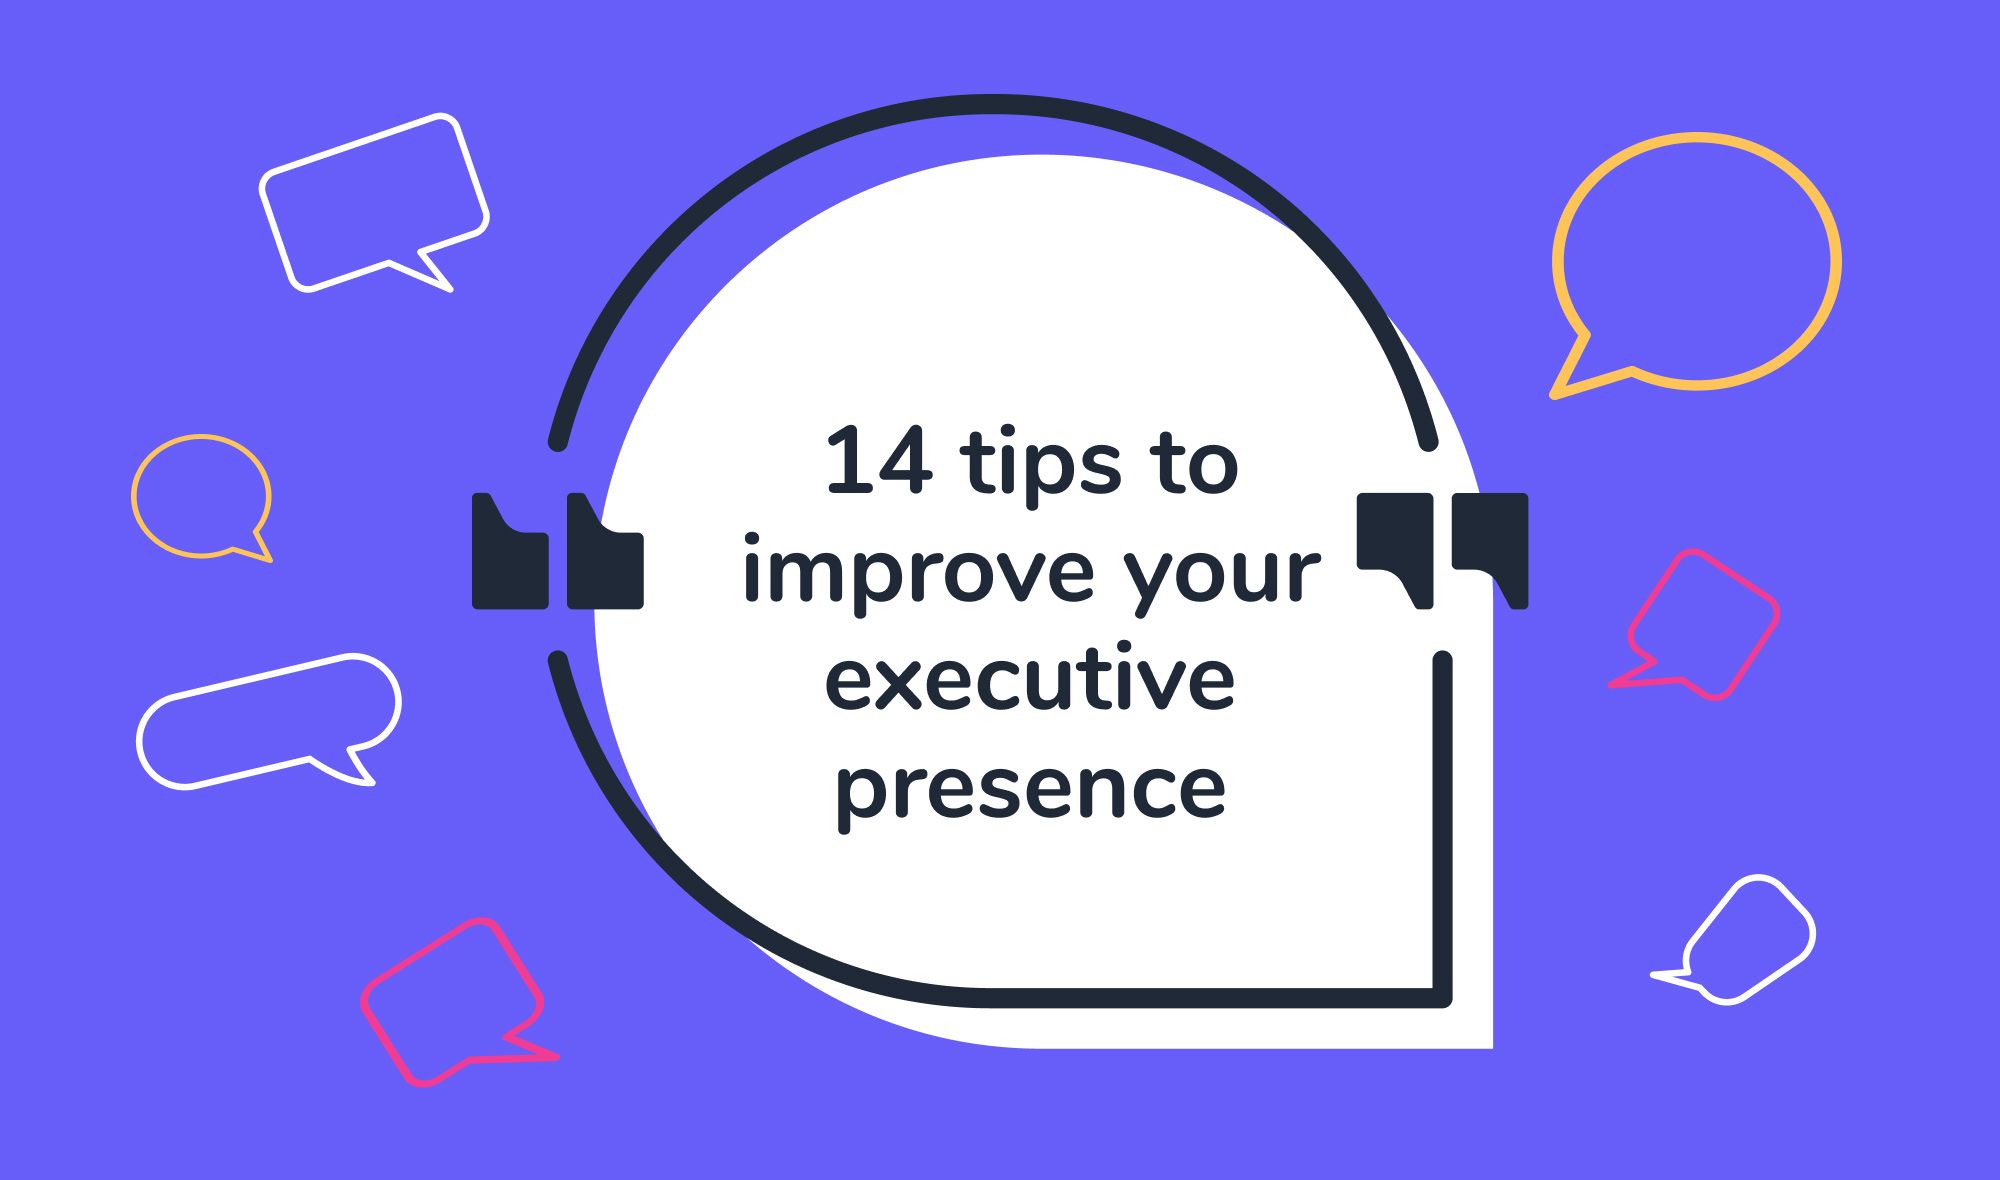 Executive presence - 14 tips to improve your executive presence